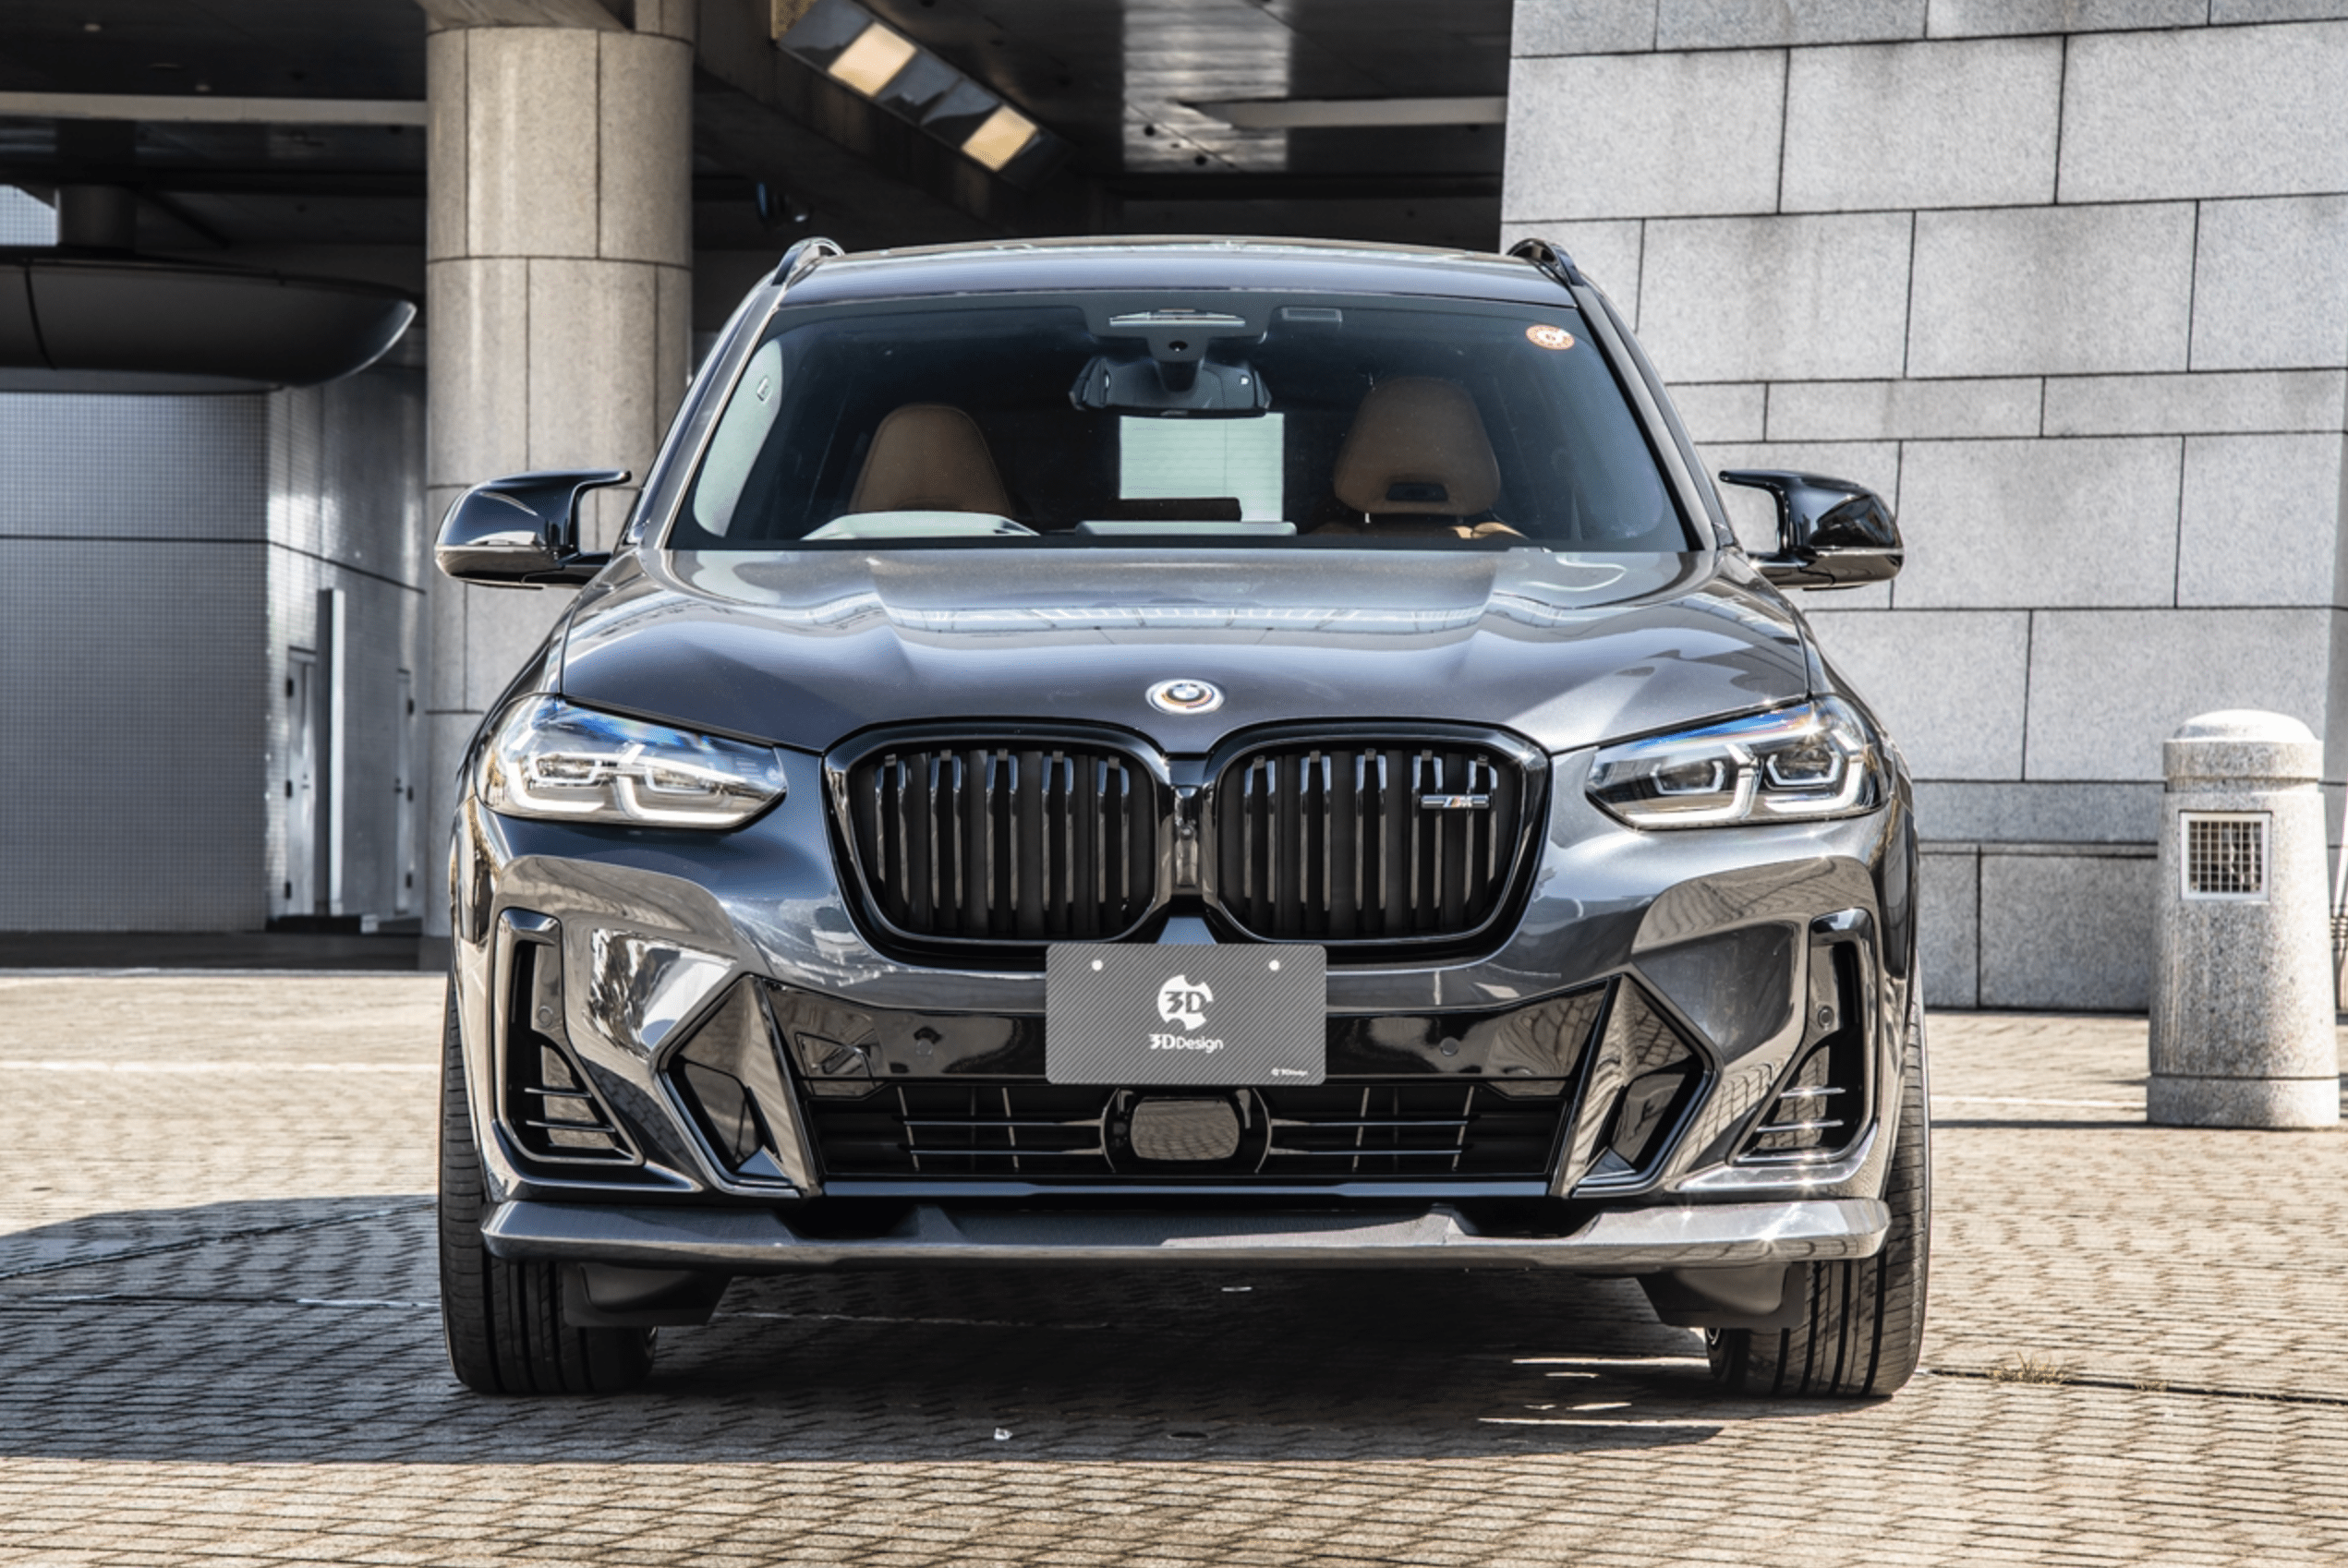 BMW X3 LCI G01 Carbon Fibre Front Splitter by 3D Design (2021+), Front Lips & Splitters, 3DDesign - AUTOID | Premium Automotive Accessories